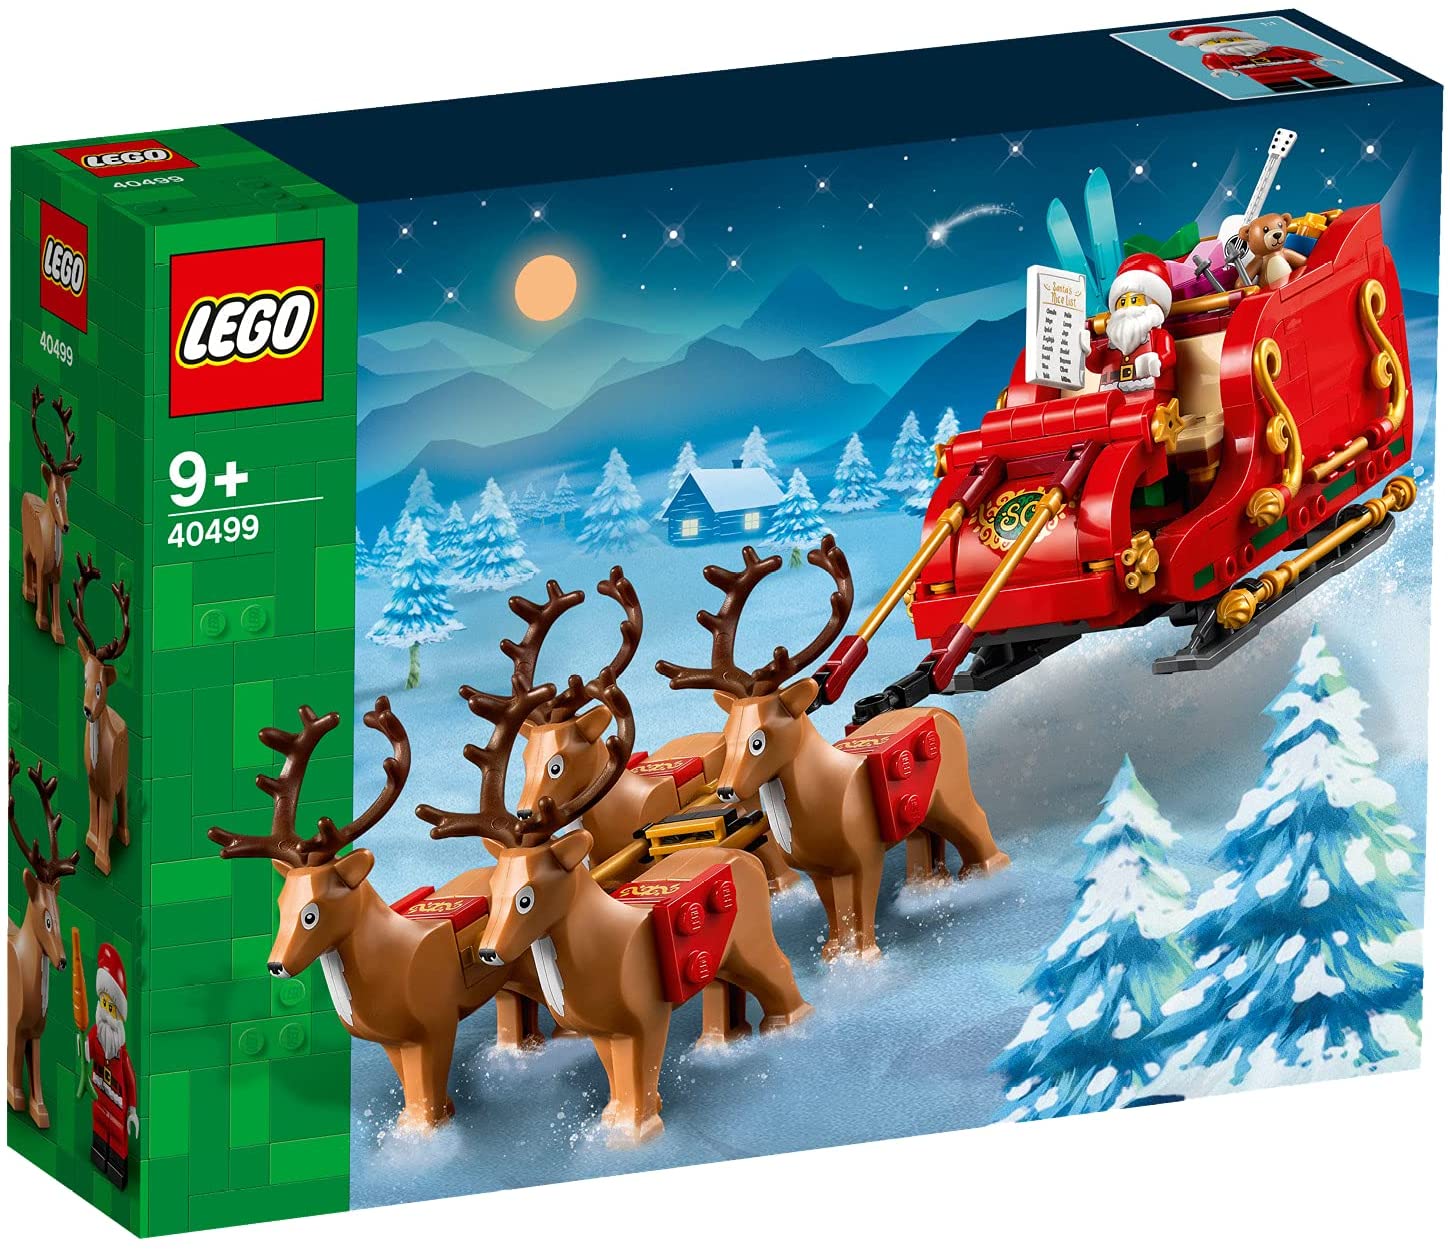 レゴブロック レゴ(LEGO) クリスマス サンタのそり 40499 国内流通正規品 おもちゃ 玩具 ブロック 男の子 女の子 おうち時間 大人 オトナレゴ ゲーム キャラクター プレゼント ギフト 誕生日 ハロウィン クリスマス